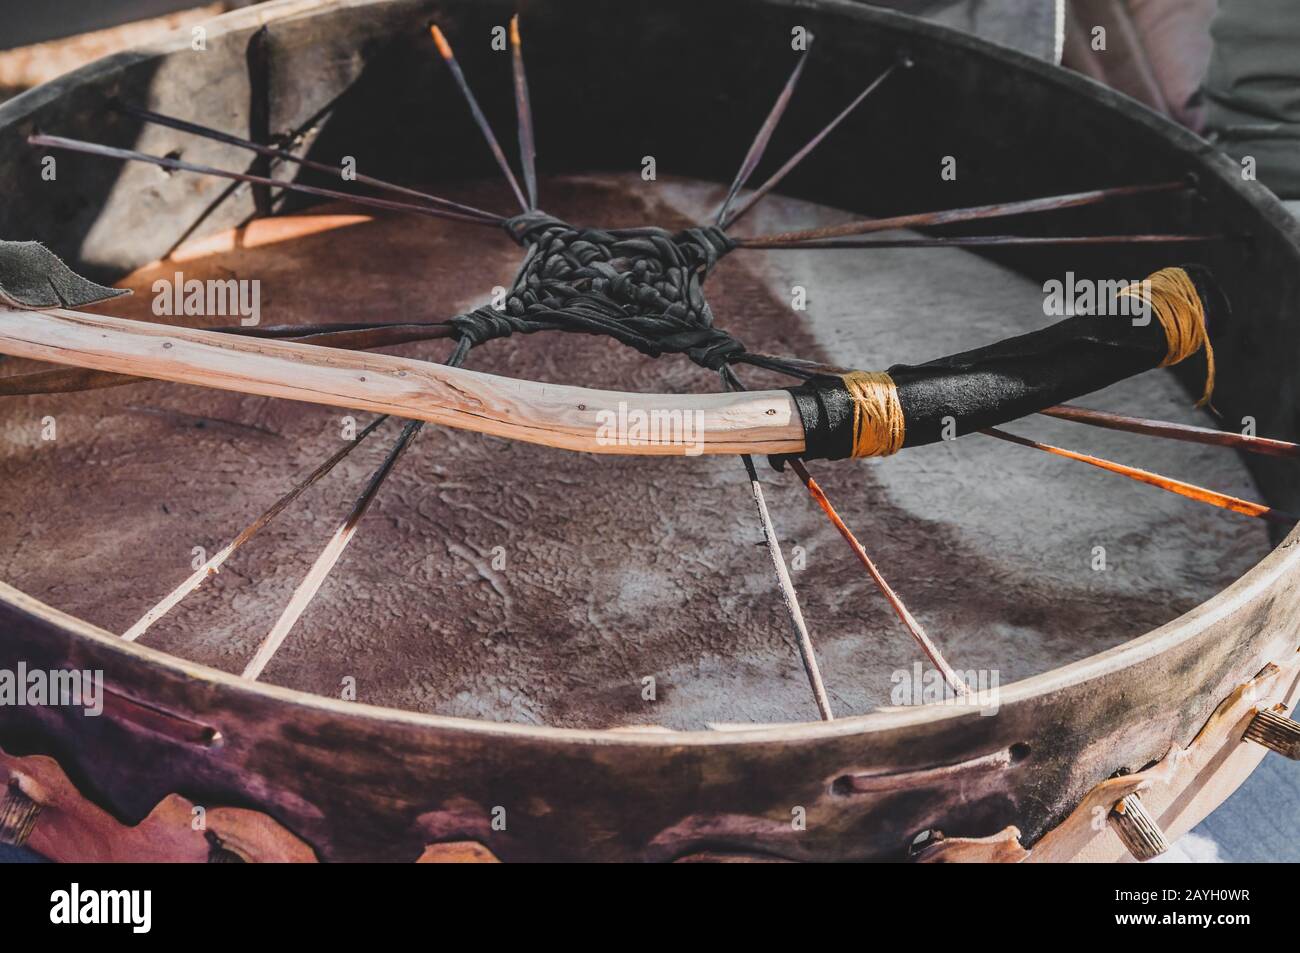 Détail gros plan d'un tambour de cuir rituel de méditation spirituelle chamanique avec une branche naturelle en bois sauvage fait à la main pour une cérémonie de chamanisme Banque D'Images